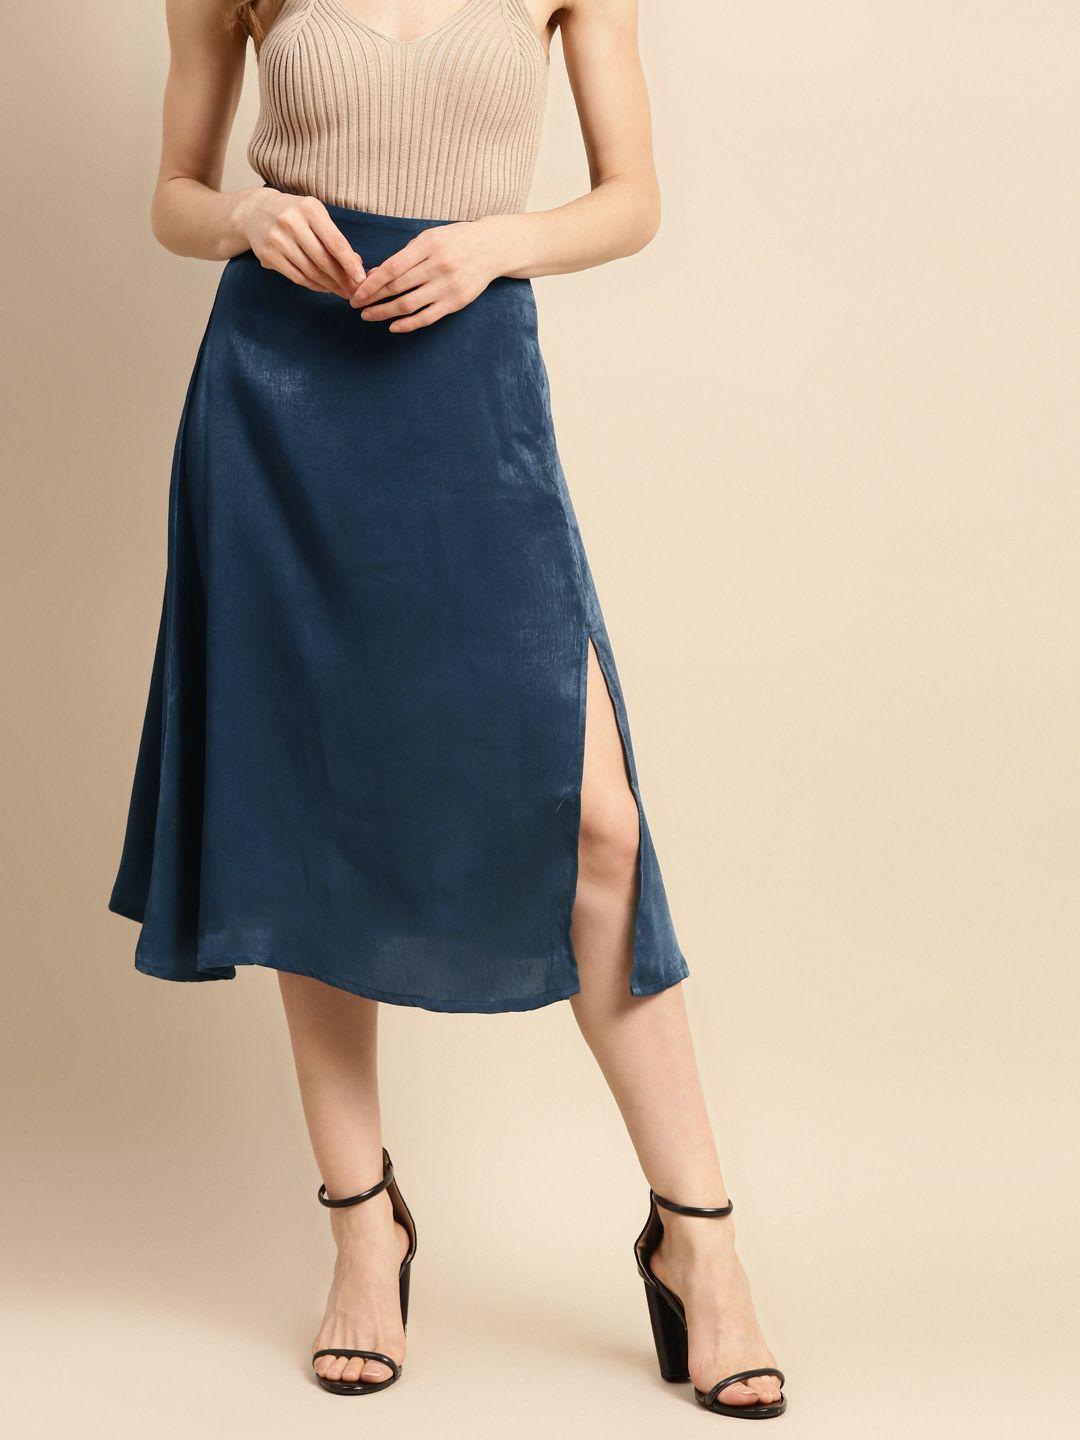 woowzerz-women-teal-blue-solid-a-line-skirt